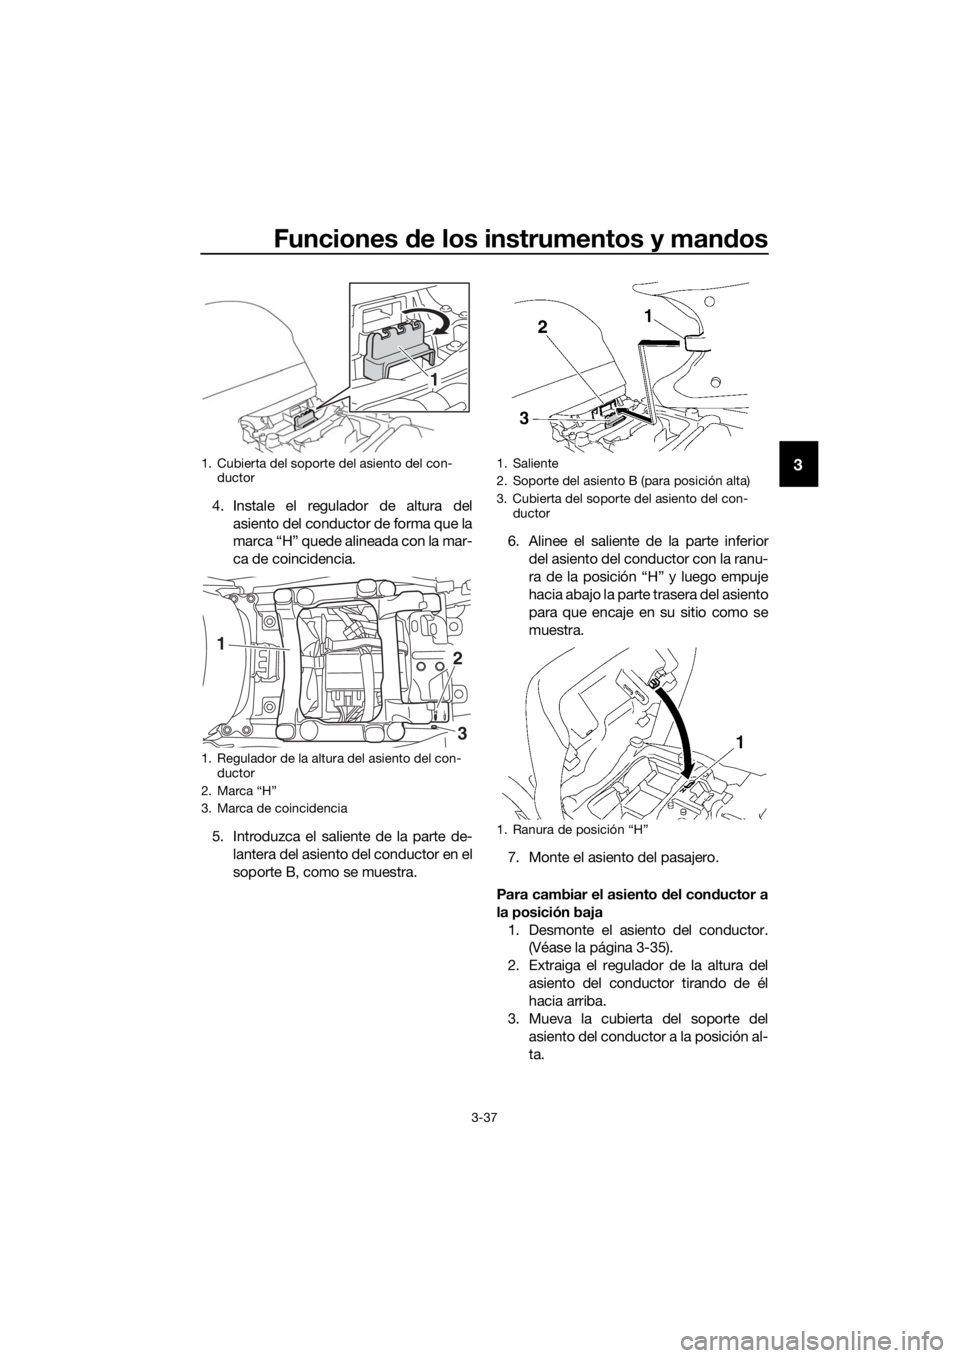 YAMAHA FJR1300AS 2018  Manuale de Empleo (in Spanish) Funciones de los instrumentos y man dos
3-37
3
4. Instale el regulador de altura del
asiento del conductor de forma que la
marca “H” quede alineada con la mar-
ca de coincidencia.
5. Introduzca el